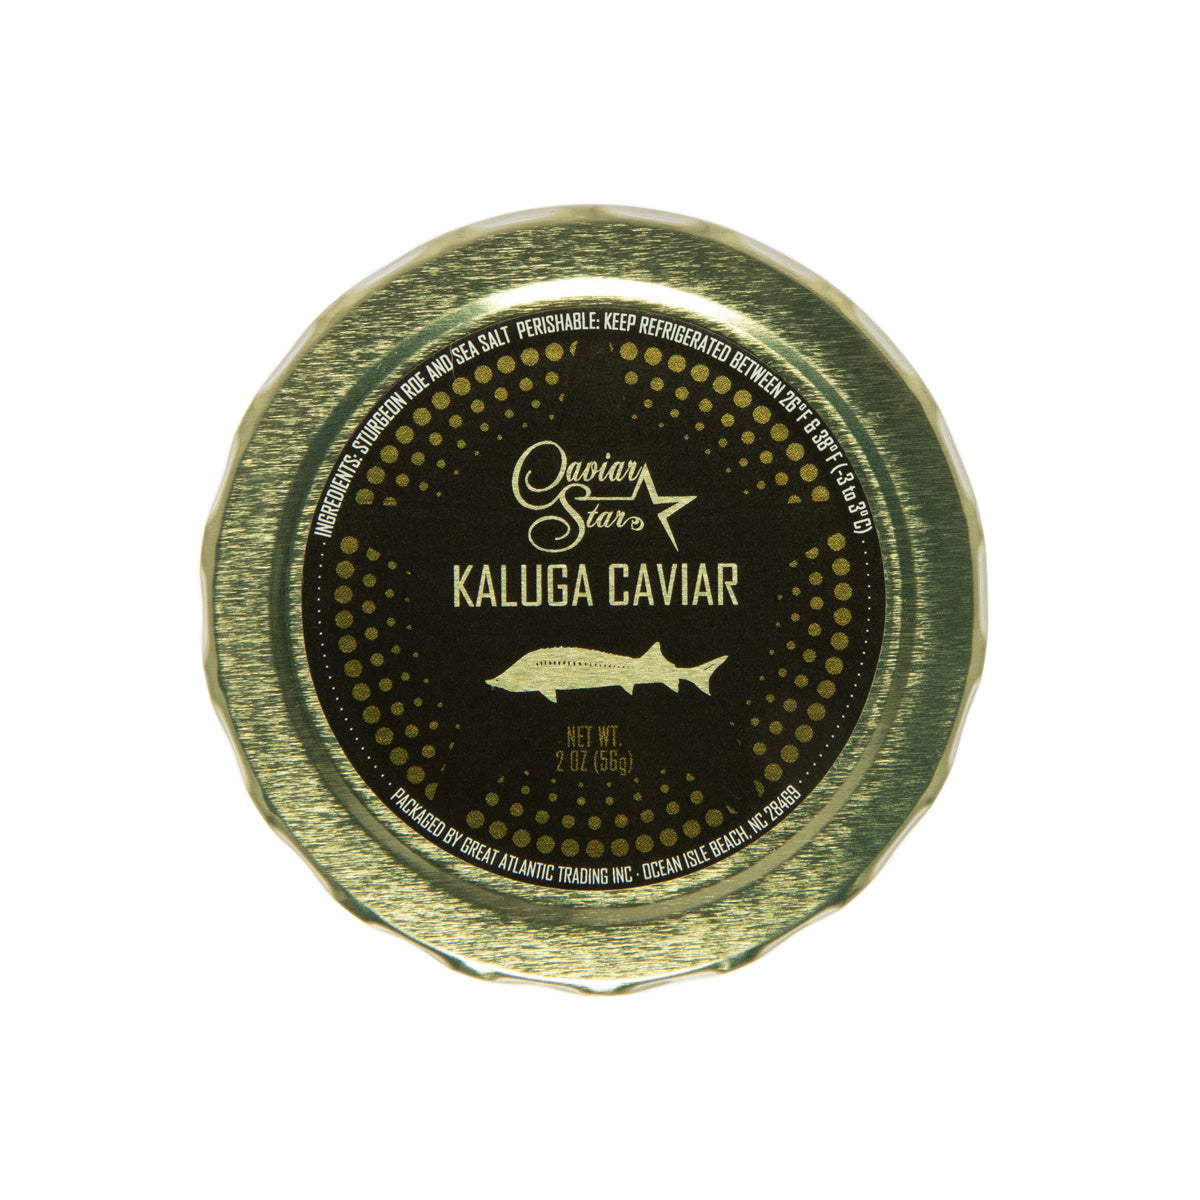 Caviar Star Amber Kaluga Hybrid Sturgeon Caviar